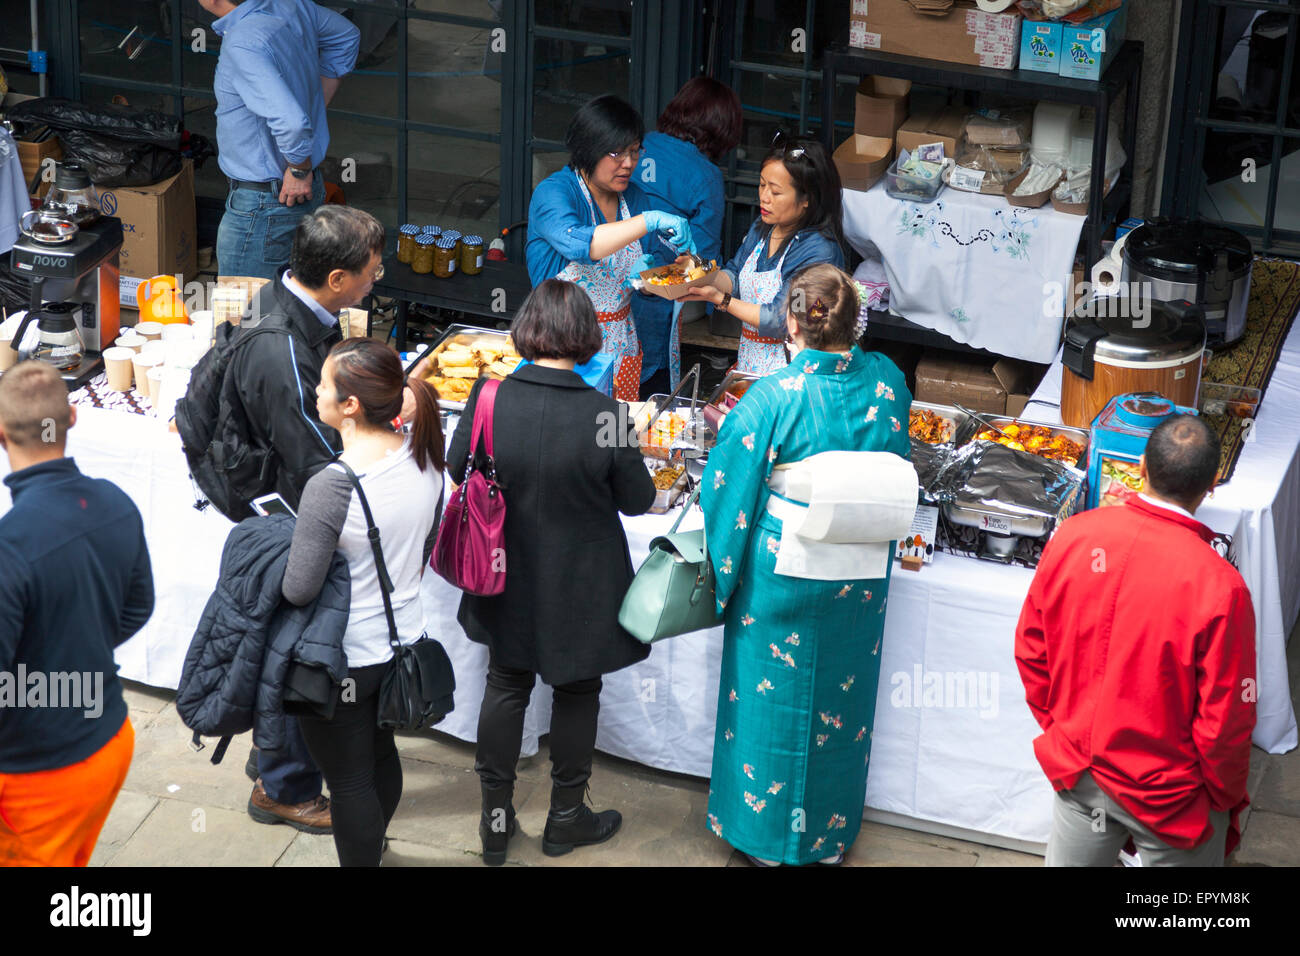 16 mai 2015 - FestivalAsia in Tobacco Docks, Londres - un festival célébrant les cultures asiatiques, les arts et la cuisine Banque D'Images